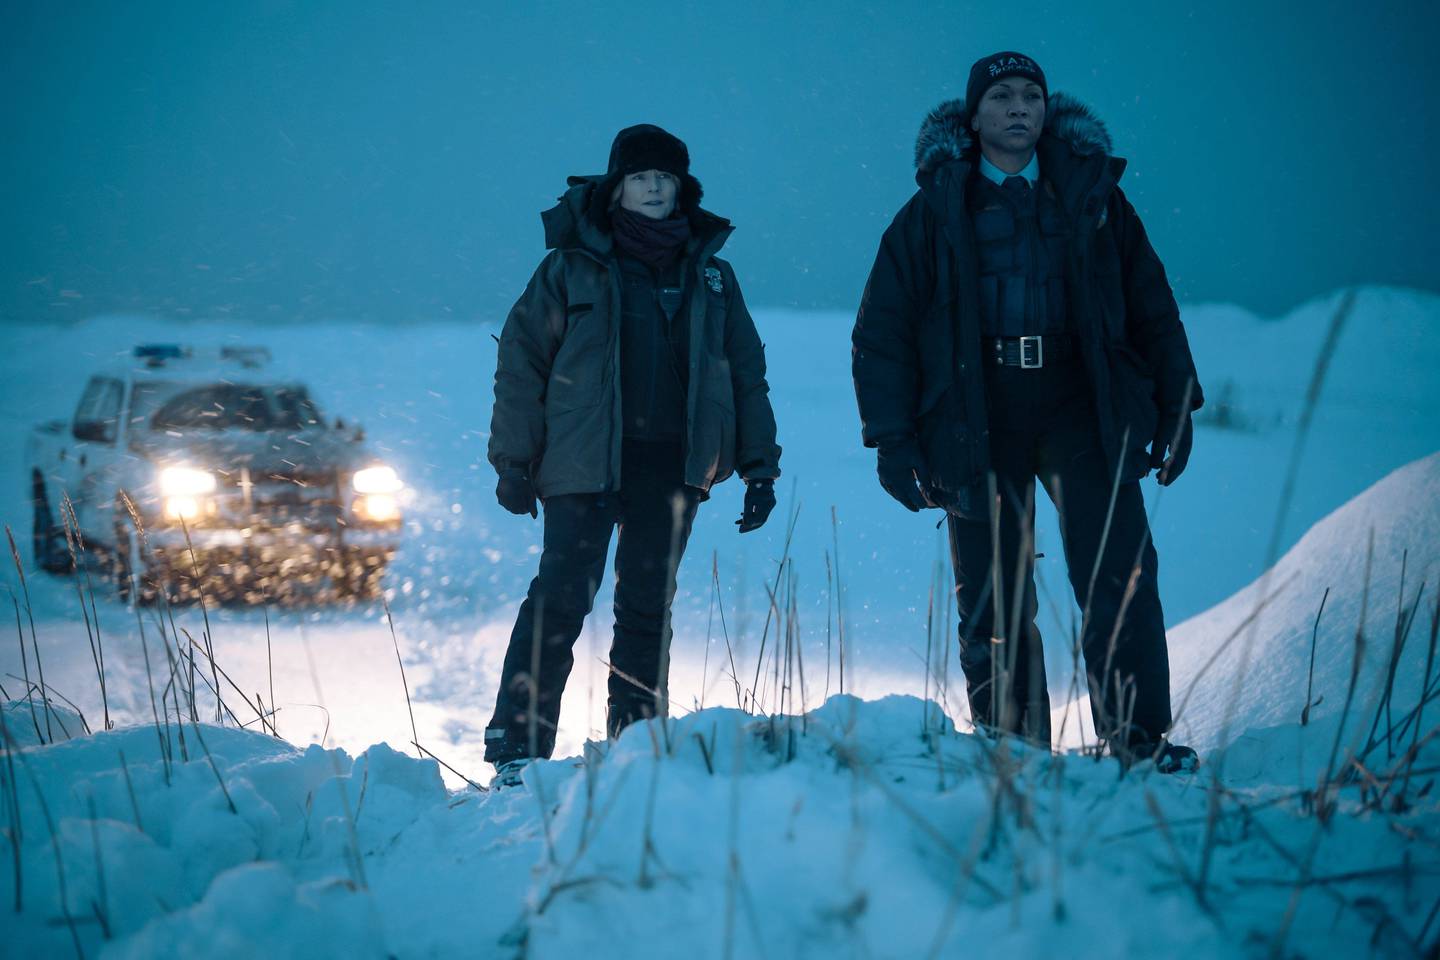 La nieve y la larga noche en Alaska serán protagonistas inesperados en esta nueva entrega de 'True Detective'. Foto: HBO